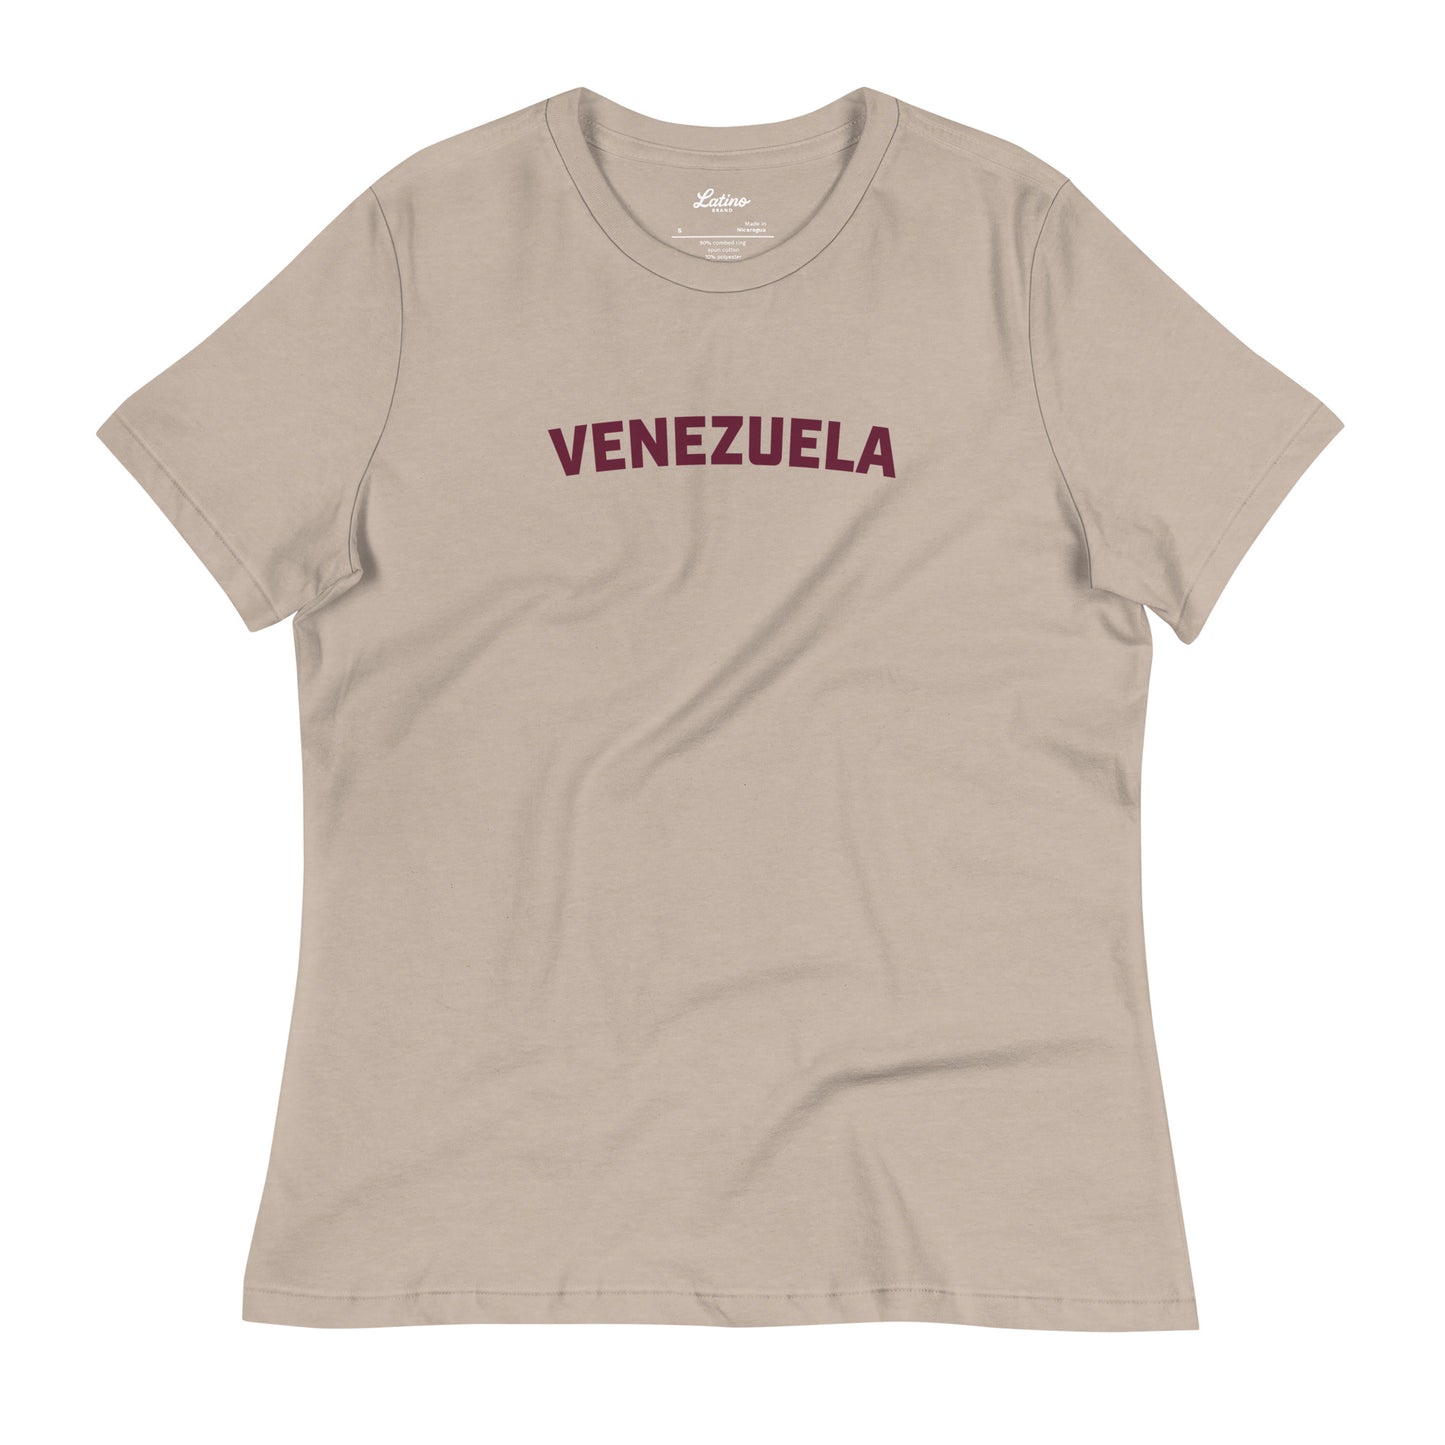 🇻🇪 Venezuela (Women)